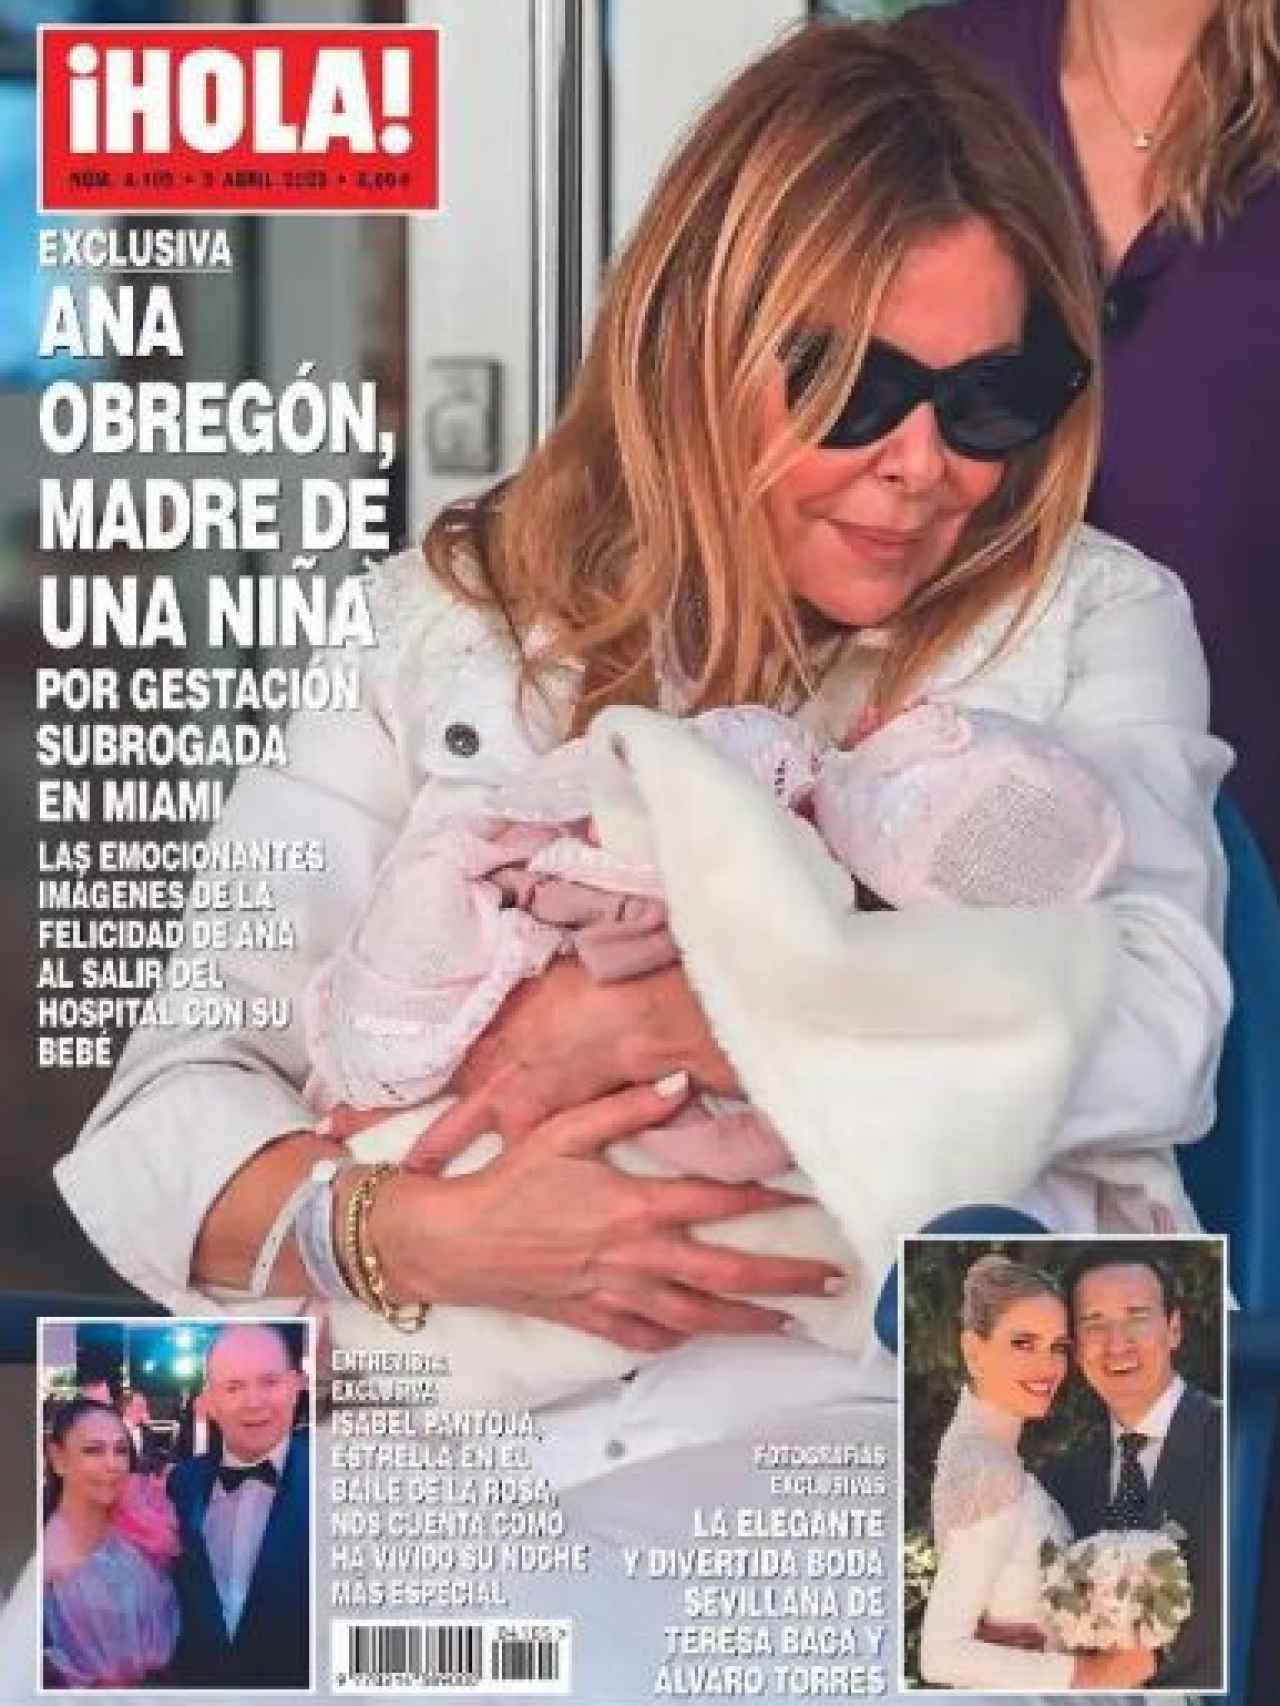 La portada de la revista ¡HOLA! en la que se informa de la maternidad de Obregón.